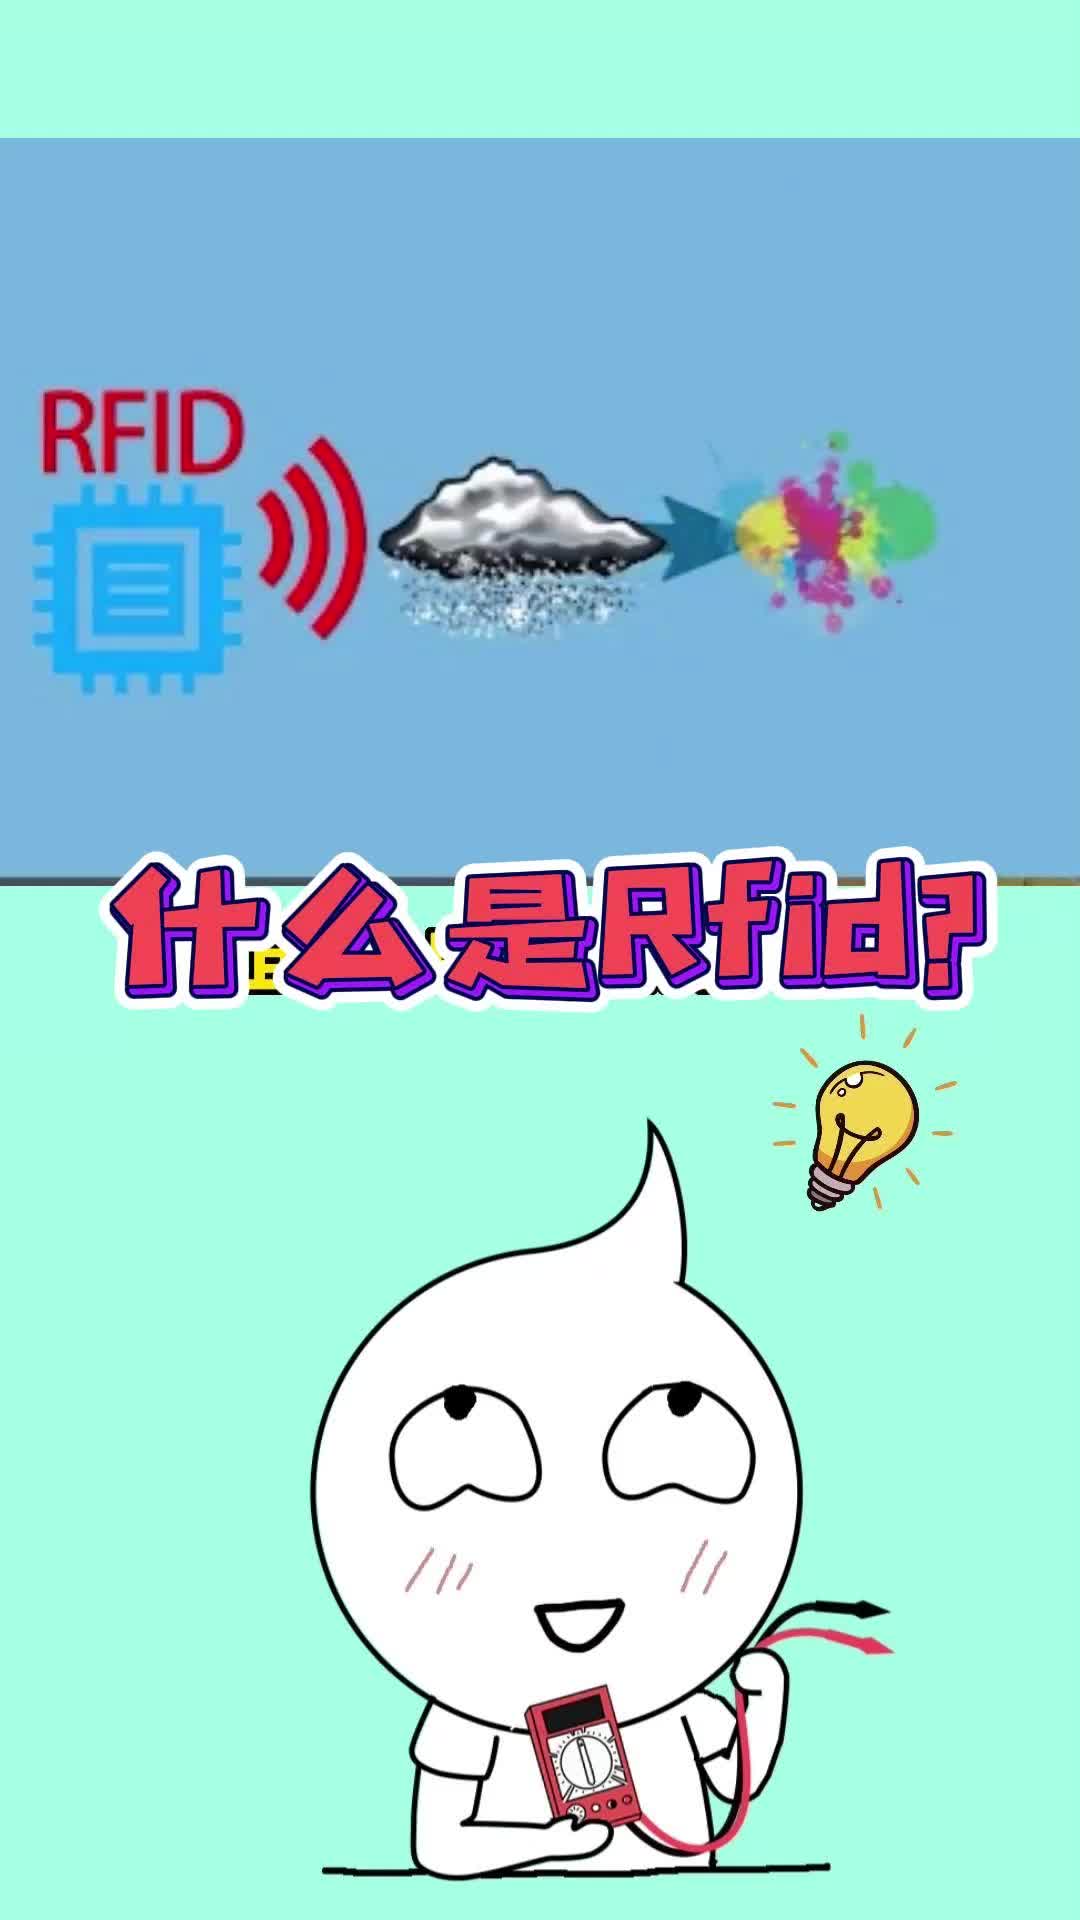 30秒带你搞懂RFID（射频识别技术），“刷我滴卡”背后的科技！ #rfid技术  #RFID 